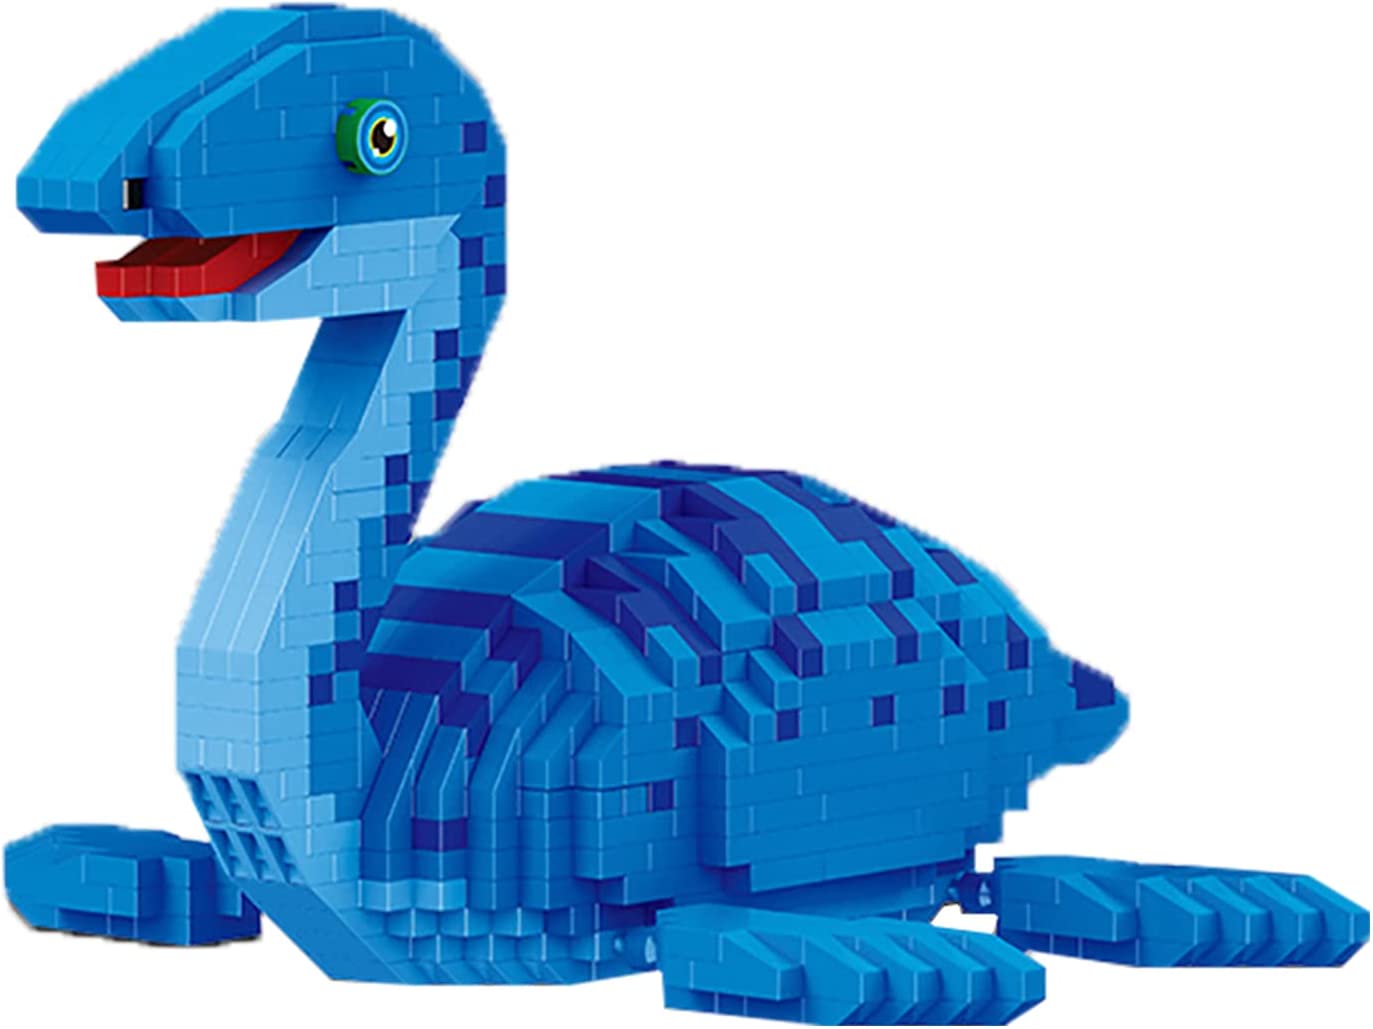 Конструктор Balody 3D из миниблоков Динозавр Плезиозавр, 1004 элементов BA18403 конструктор balody 3d из миниблоков такса бадди 2100 элементов ba16014